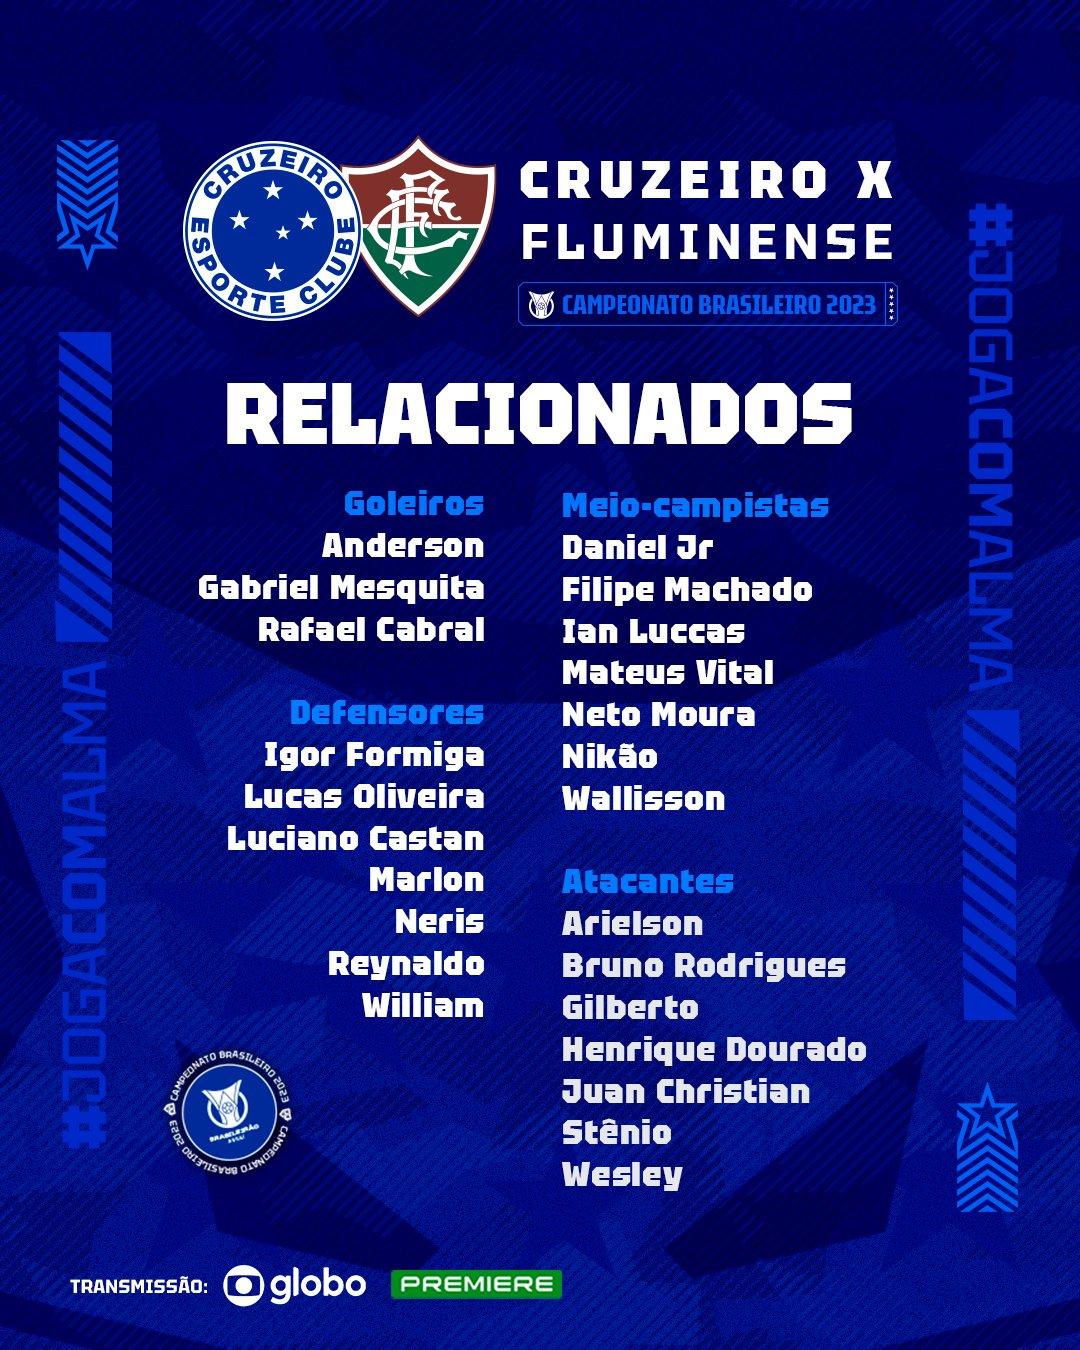 Lista de Relacionados para o jogo contra o Fluminense (Divulgação / Cruzeiro)